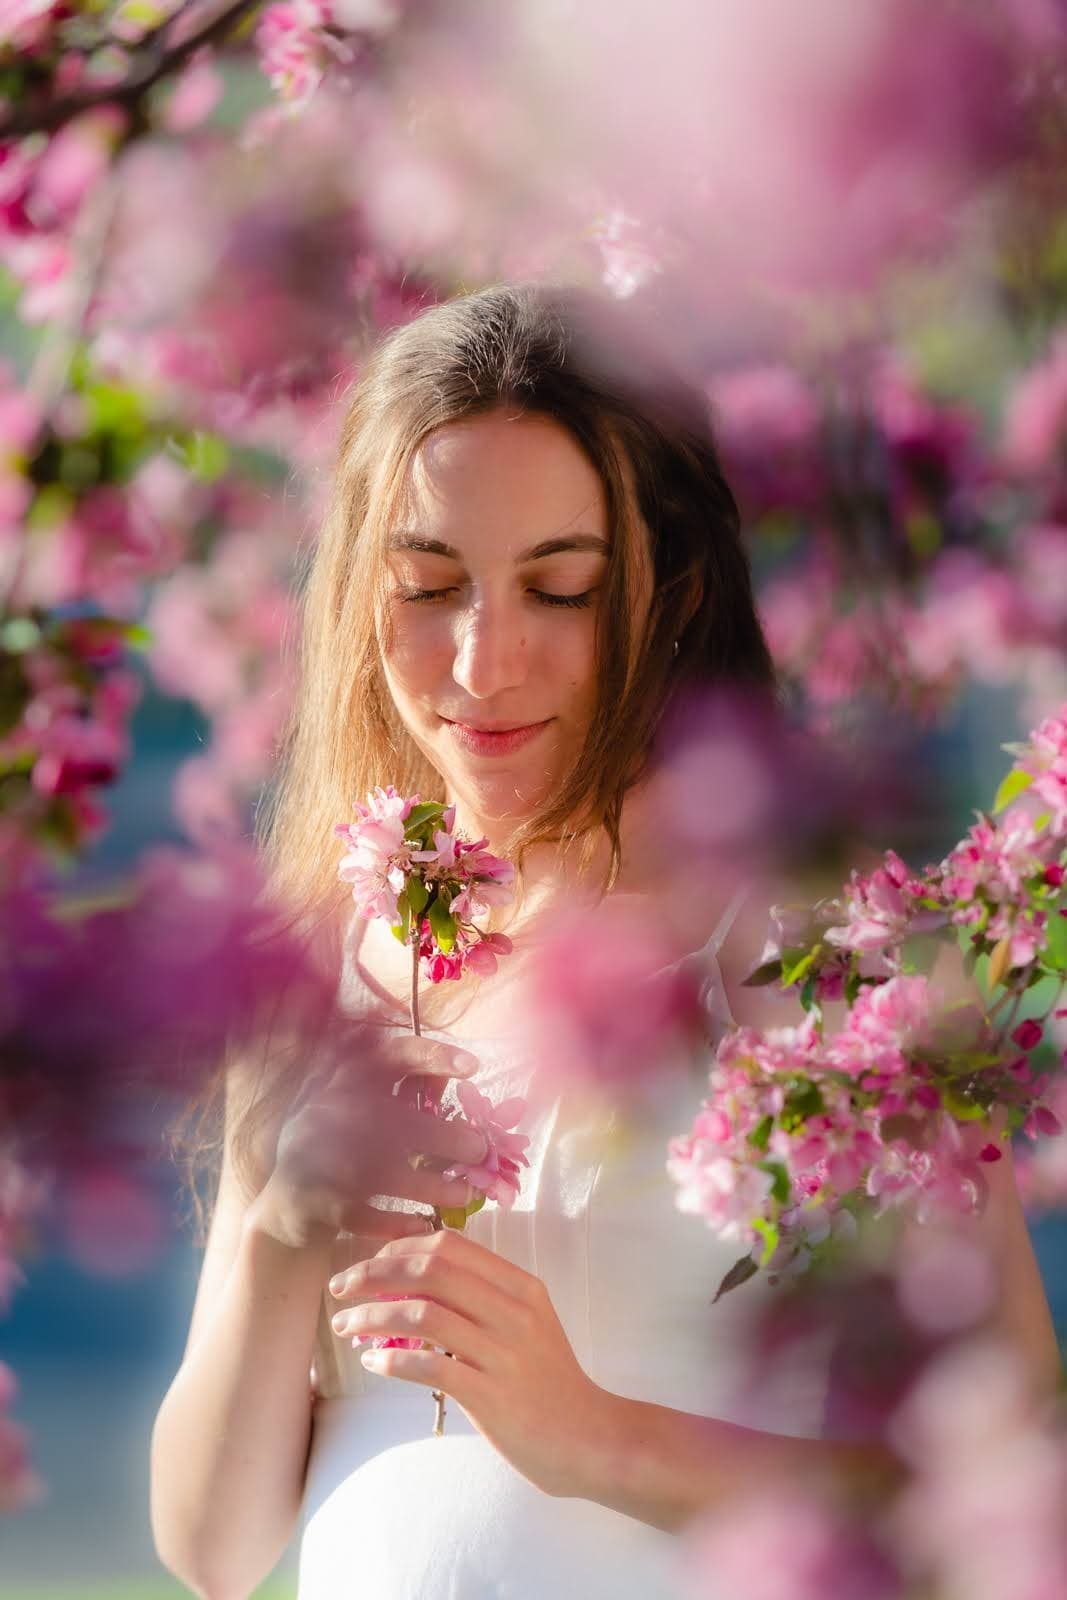 Capture the Magic: Spring Blossom Portraits